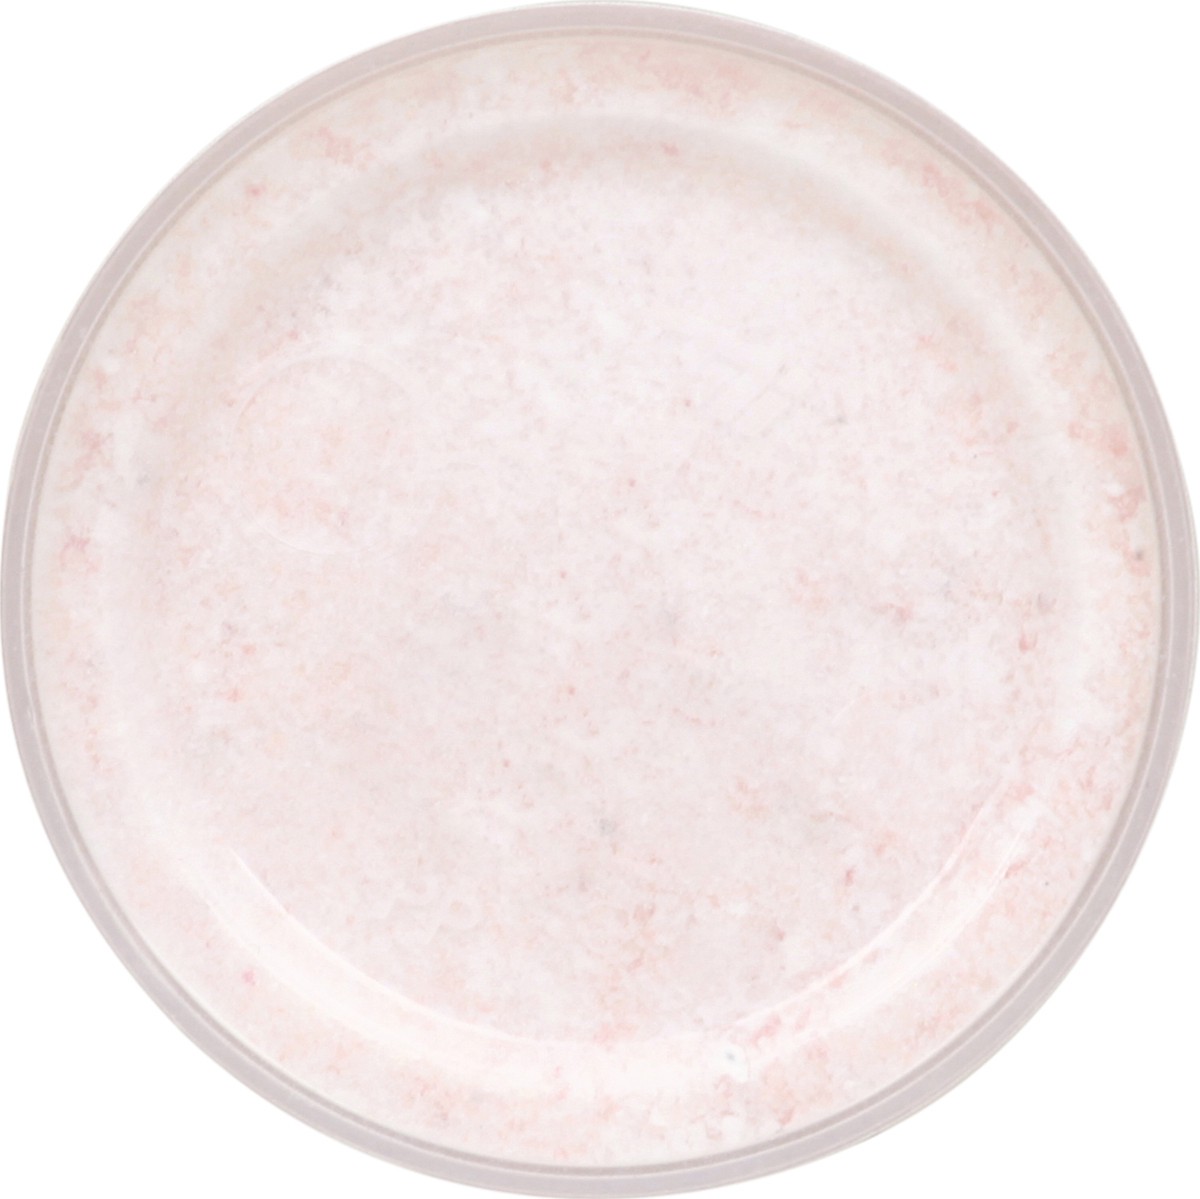 slide 12 of 12, Himalania Natierra Himalania Himalayan Fine Pink Salt Reduced Sodium Mix Shaker, 6 oz